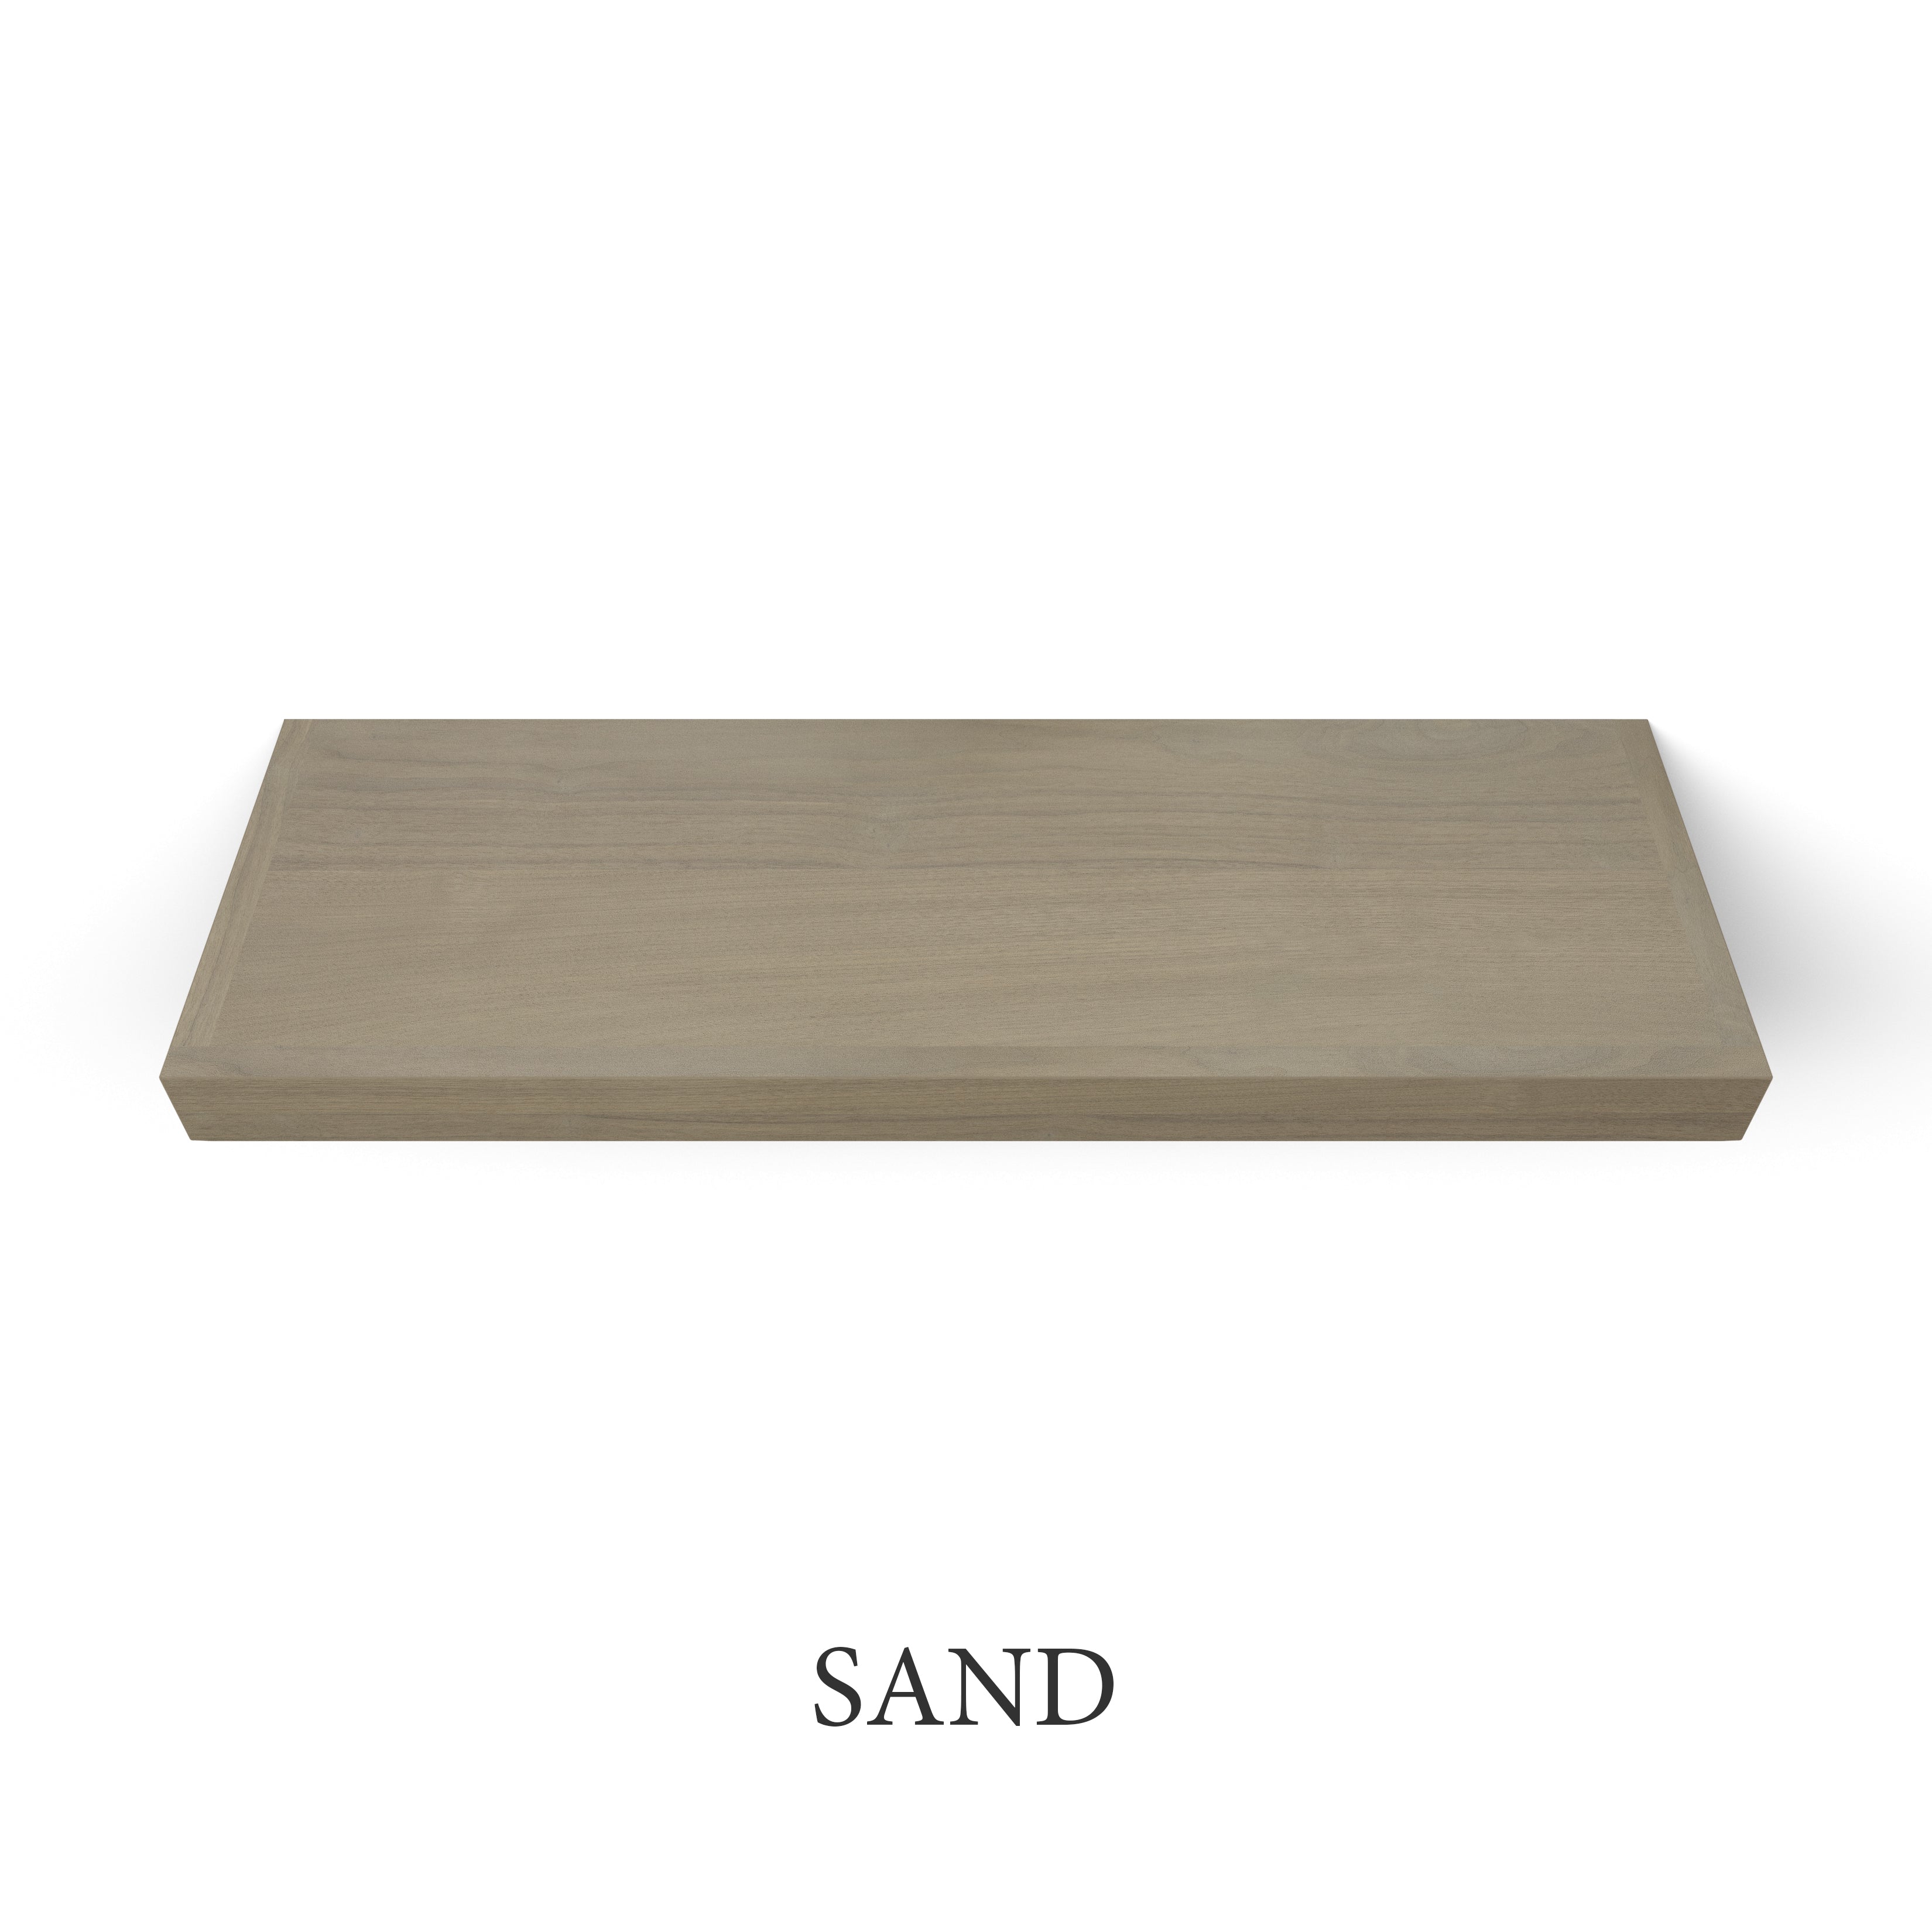 sand Walnut 2 Inch Thick Floating Shelf